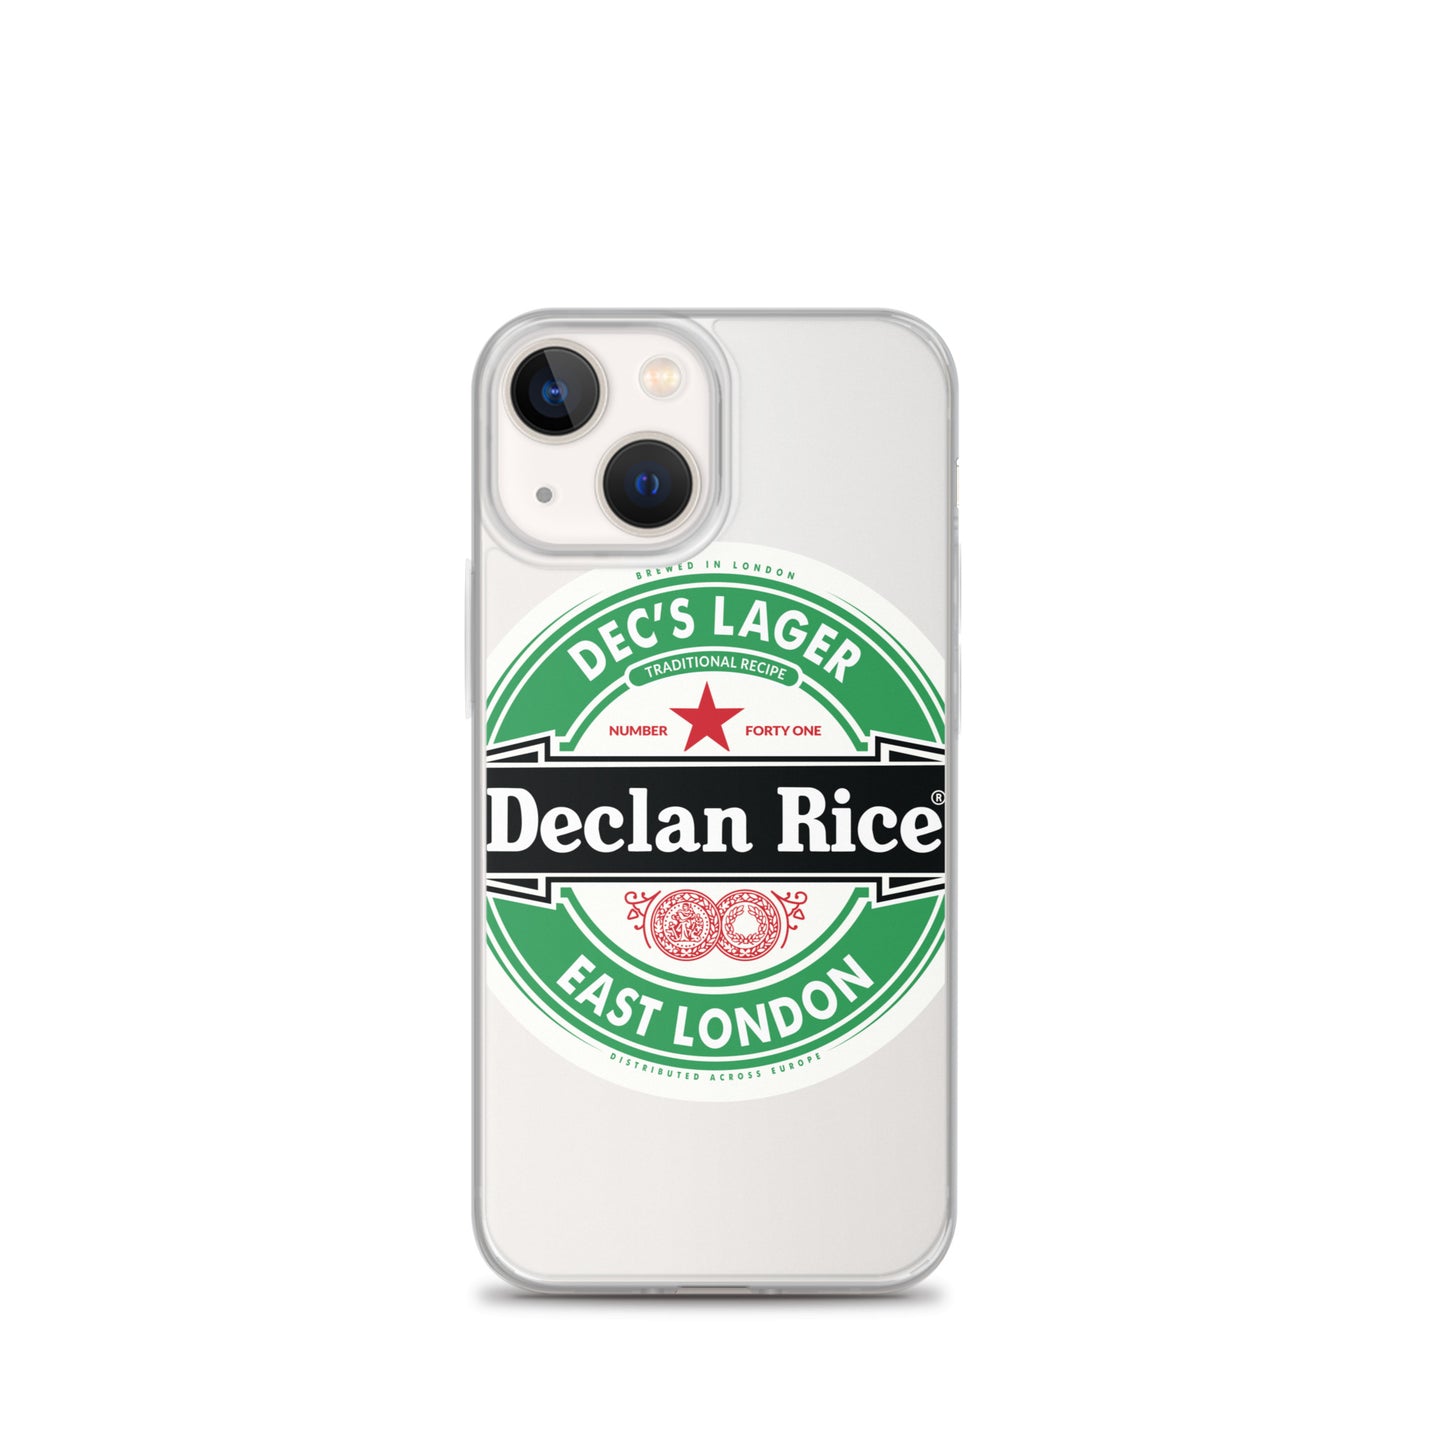 Dec's Lager iPhone Case